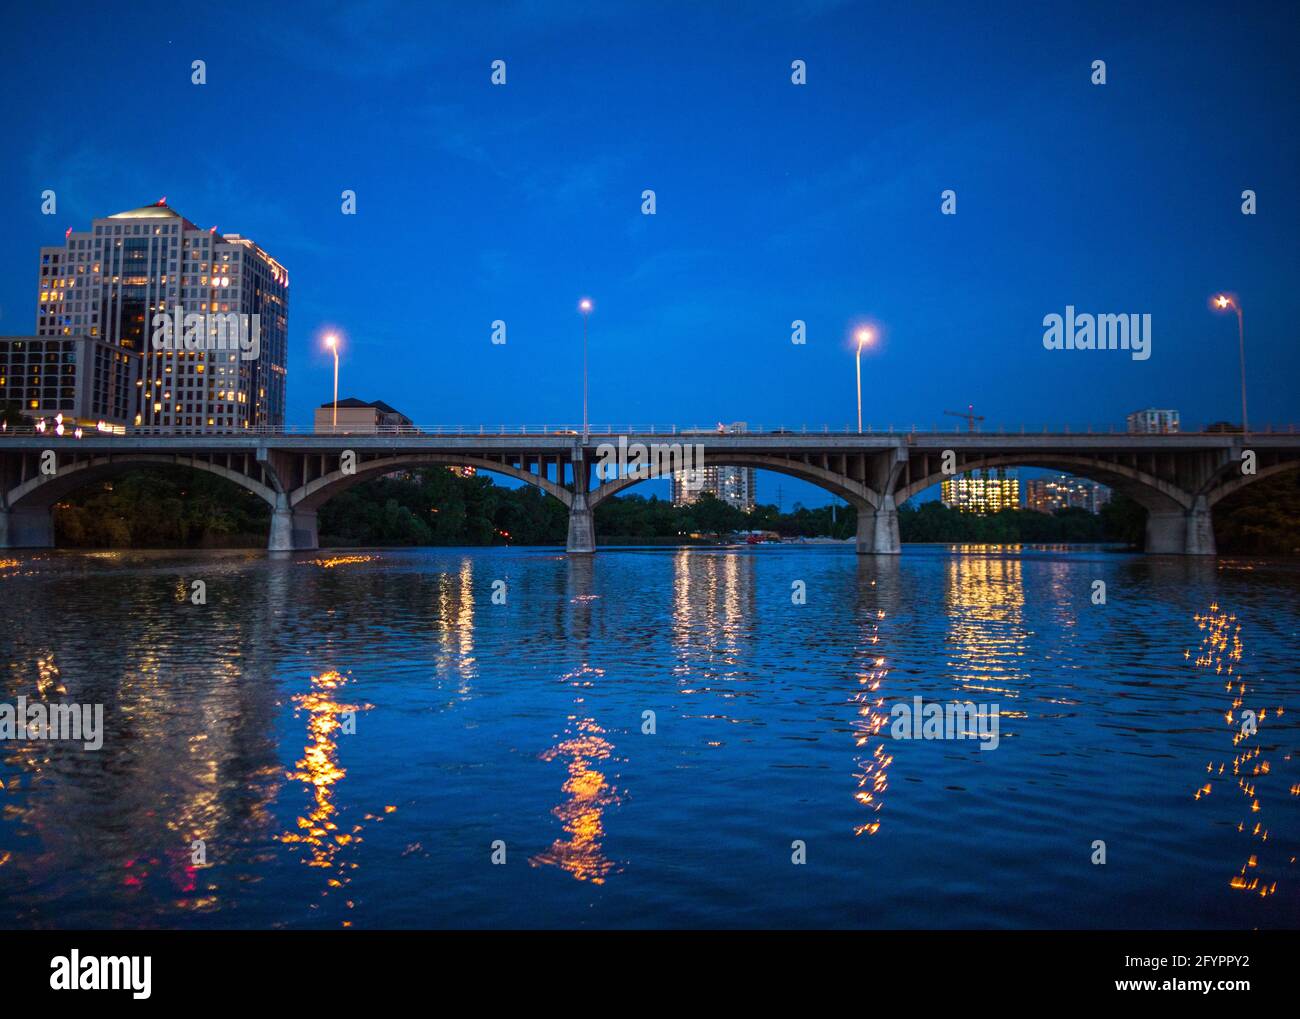 Horizonte de la ciudad de Austin por la noche con el puente de congresos South Congress Bridge desde el río Colorado. Austin, Texas, Estados Unidos Foto de stock